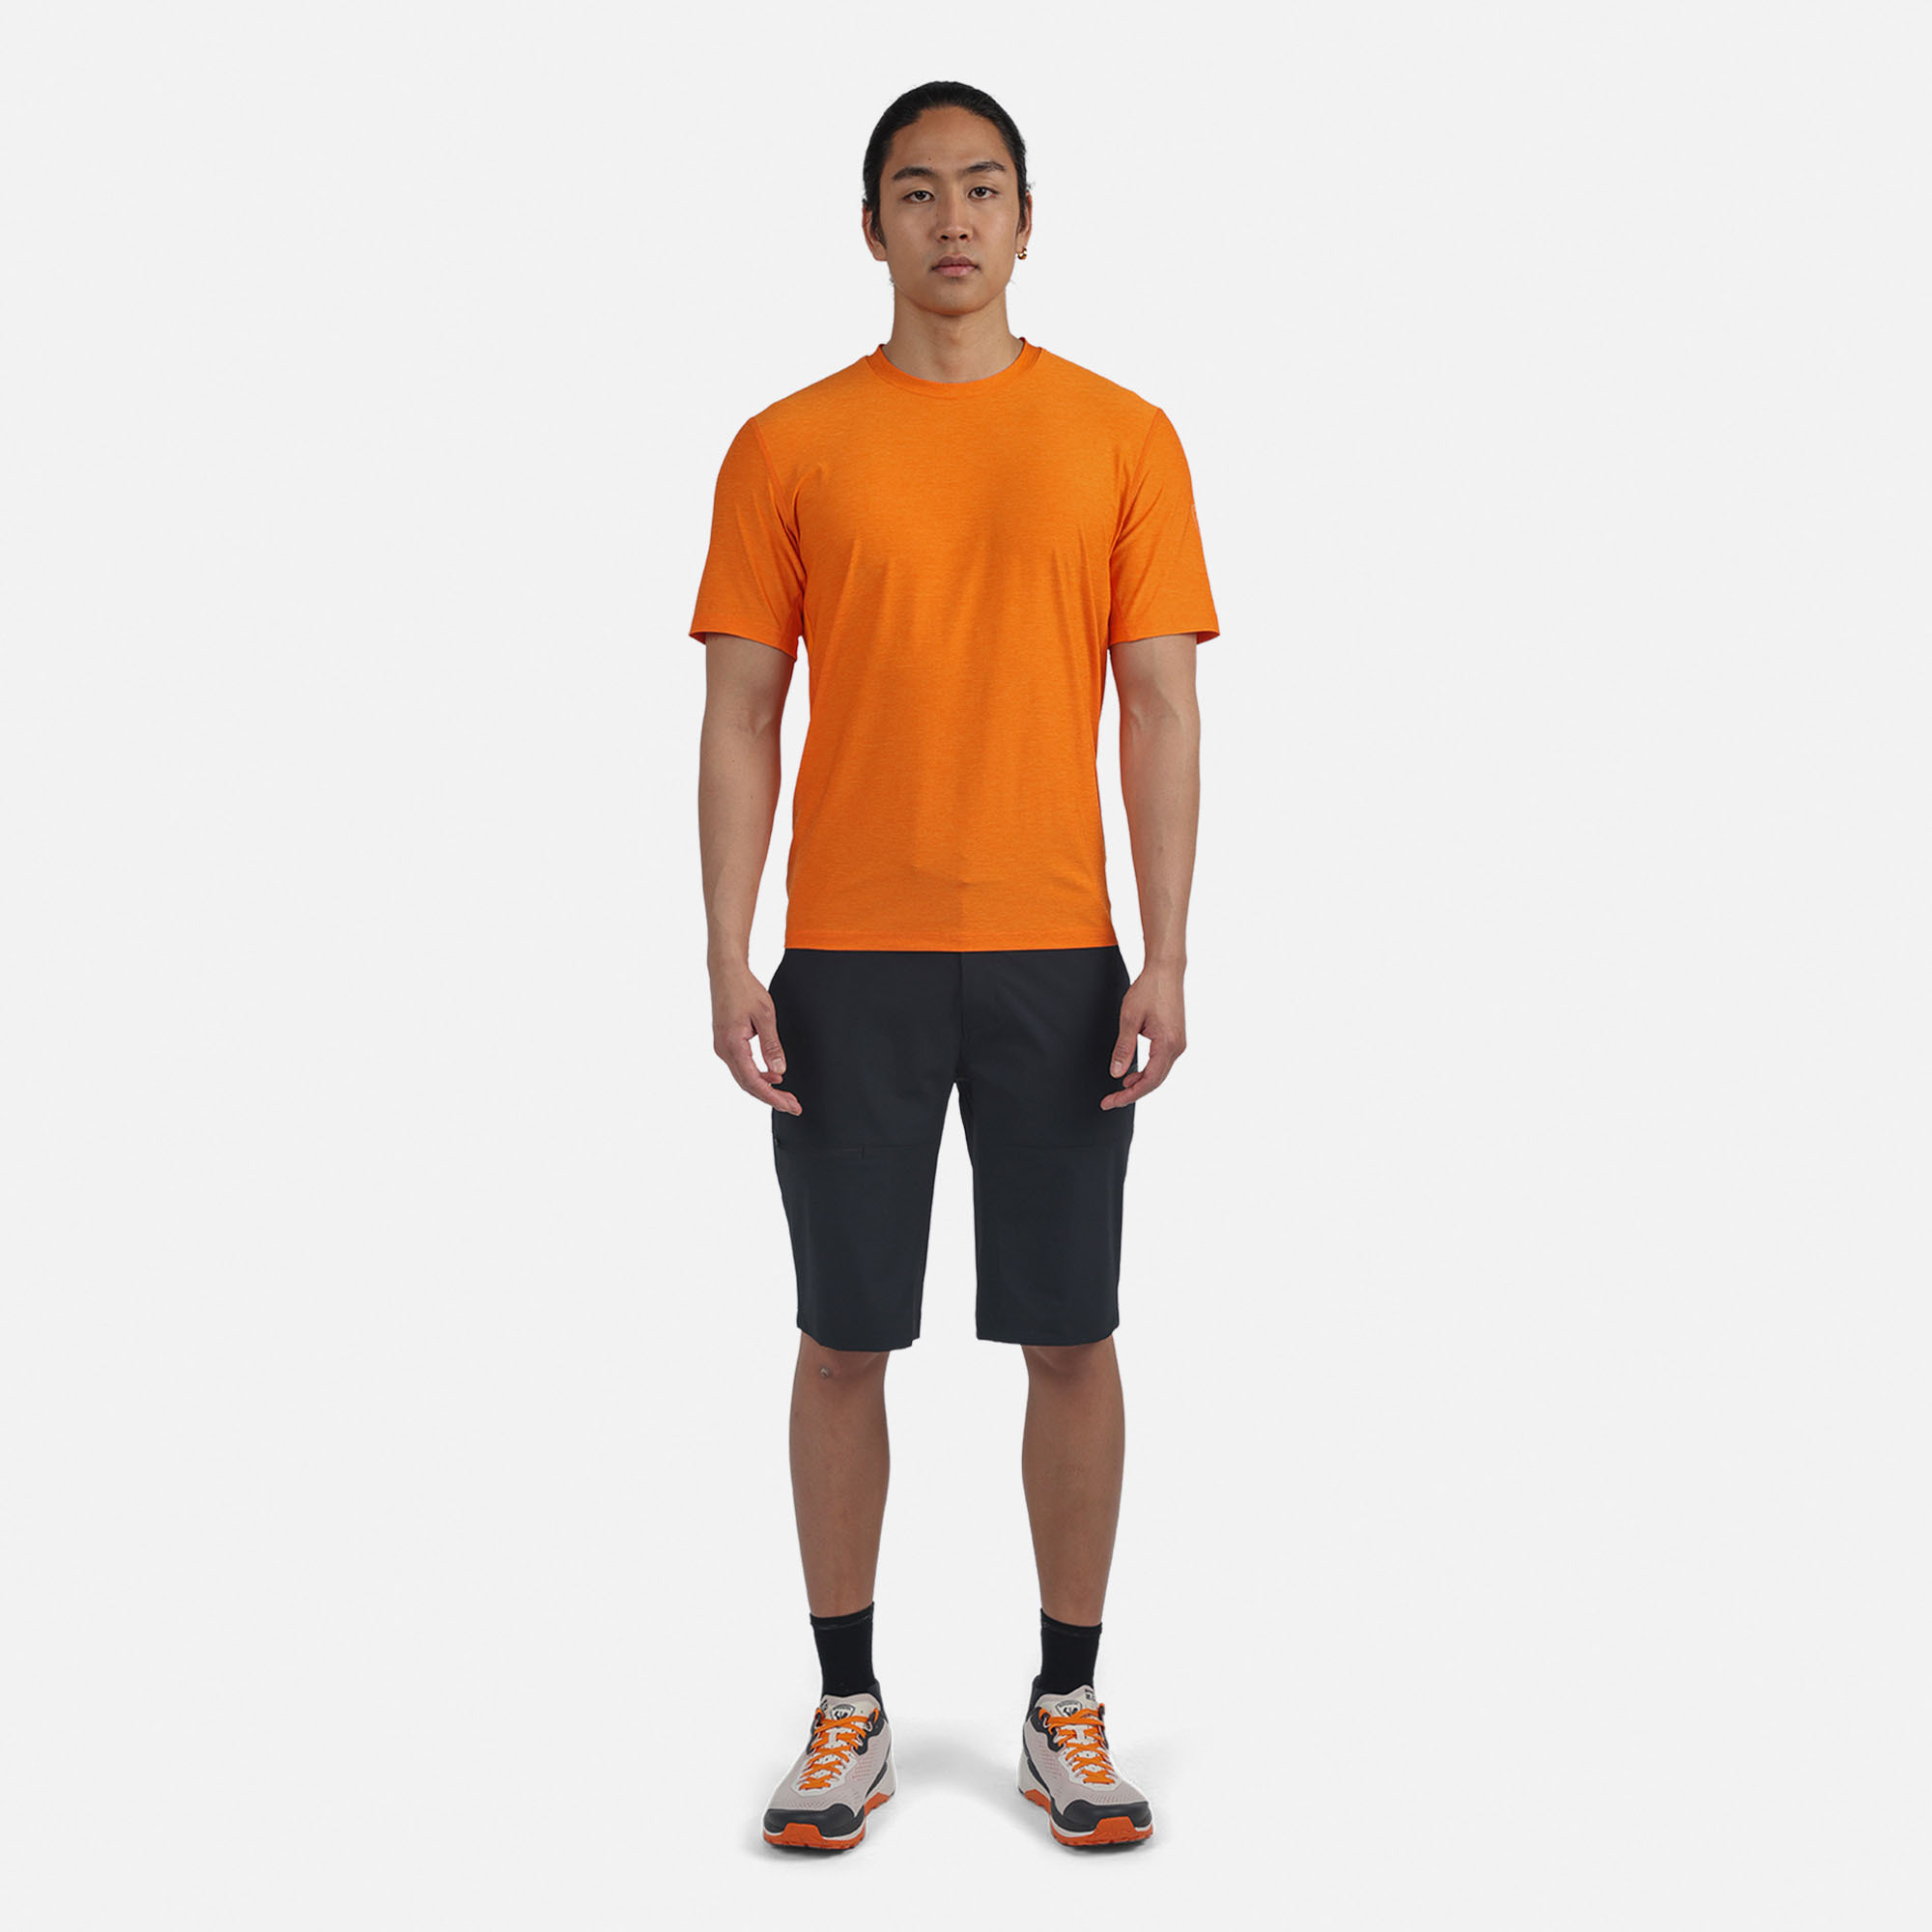 Men's Active Cargo Shorts